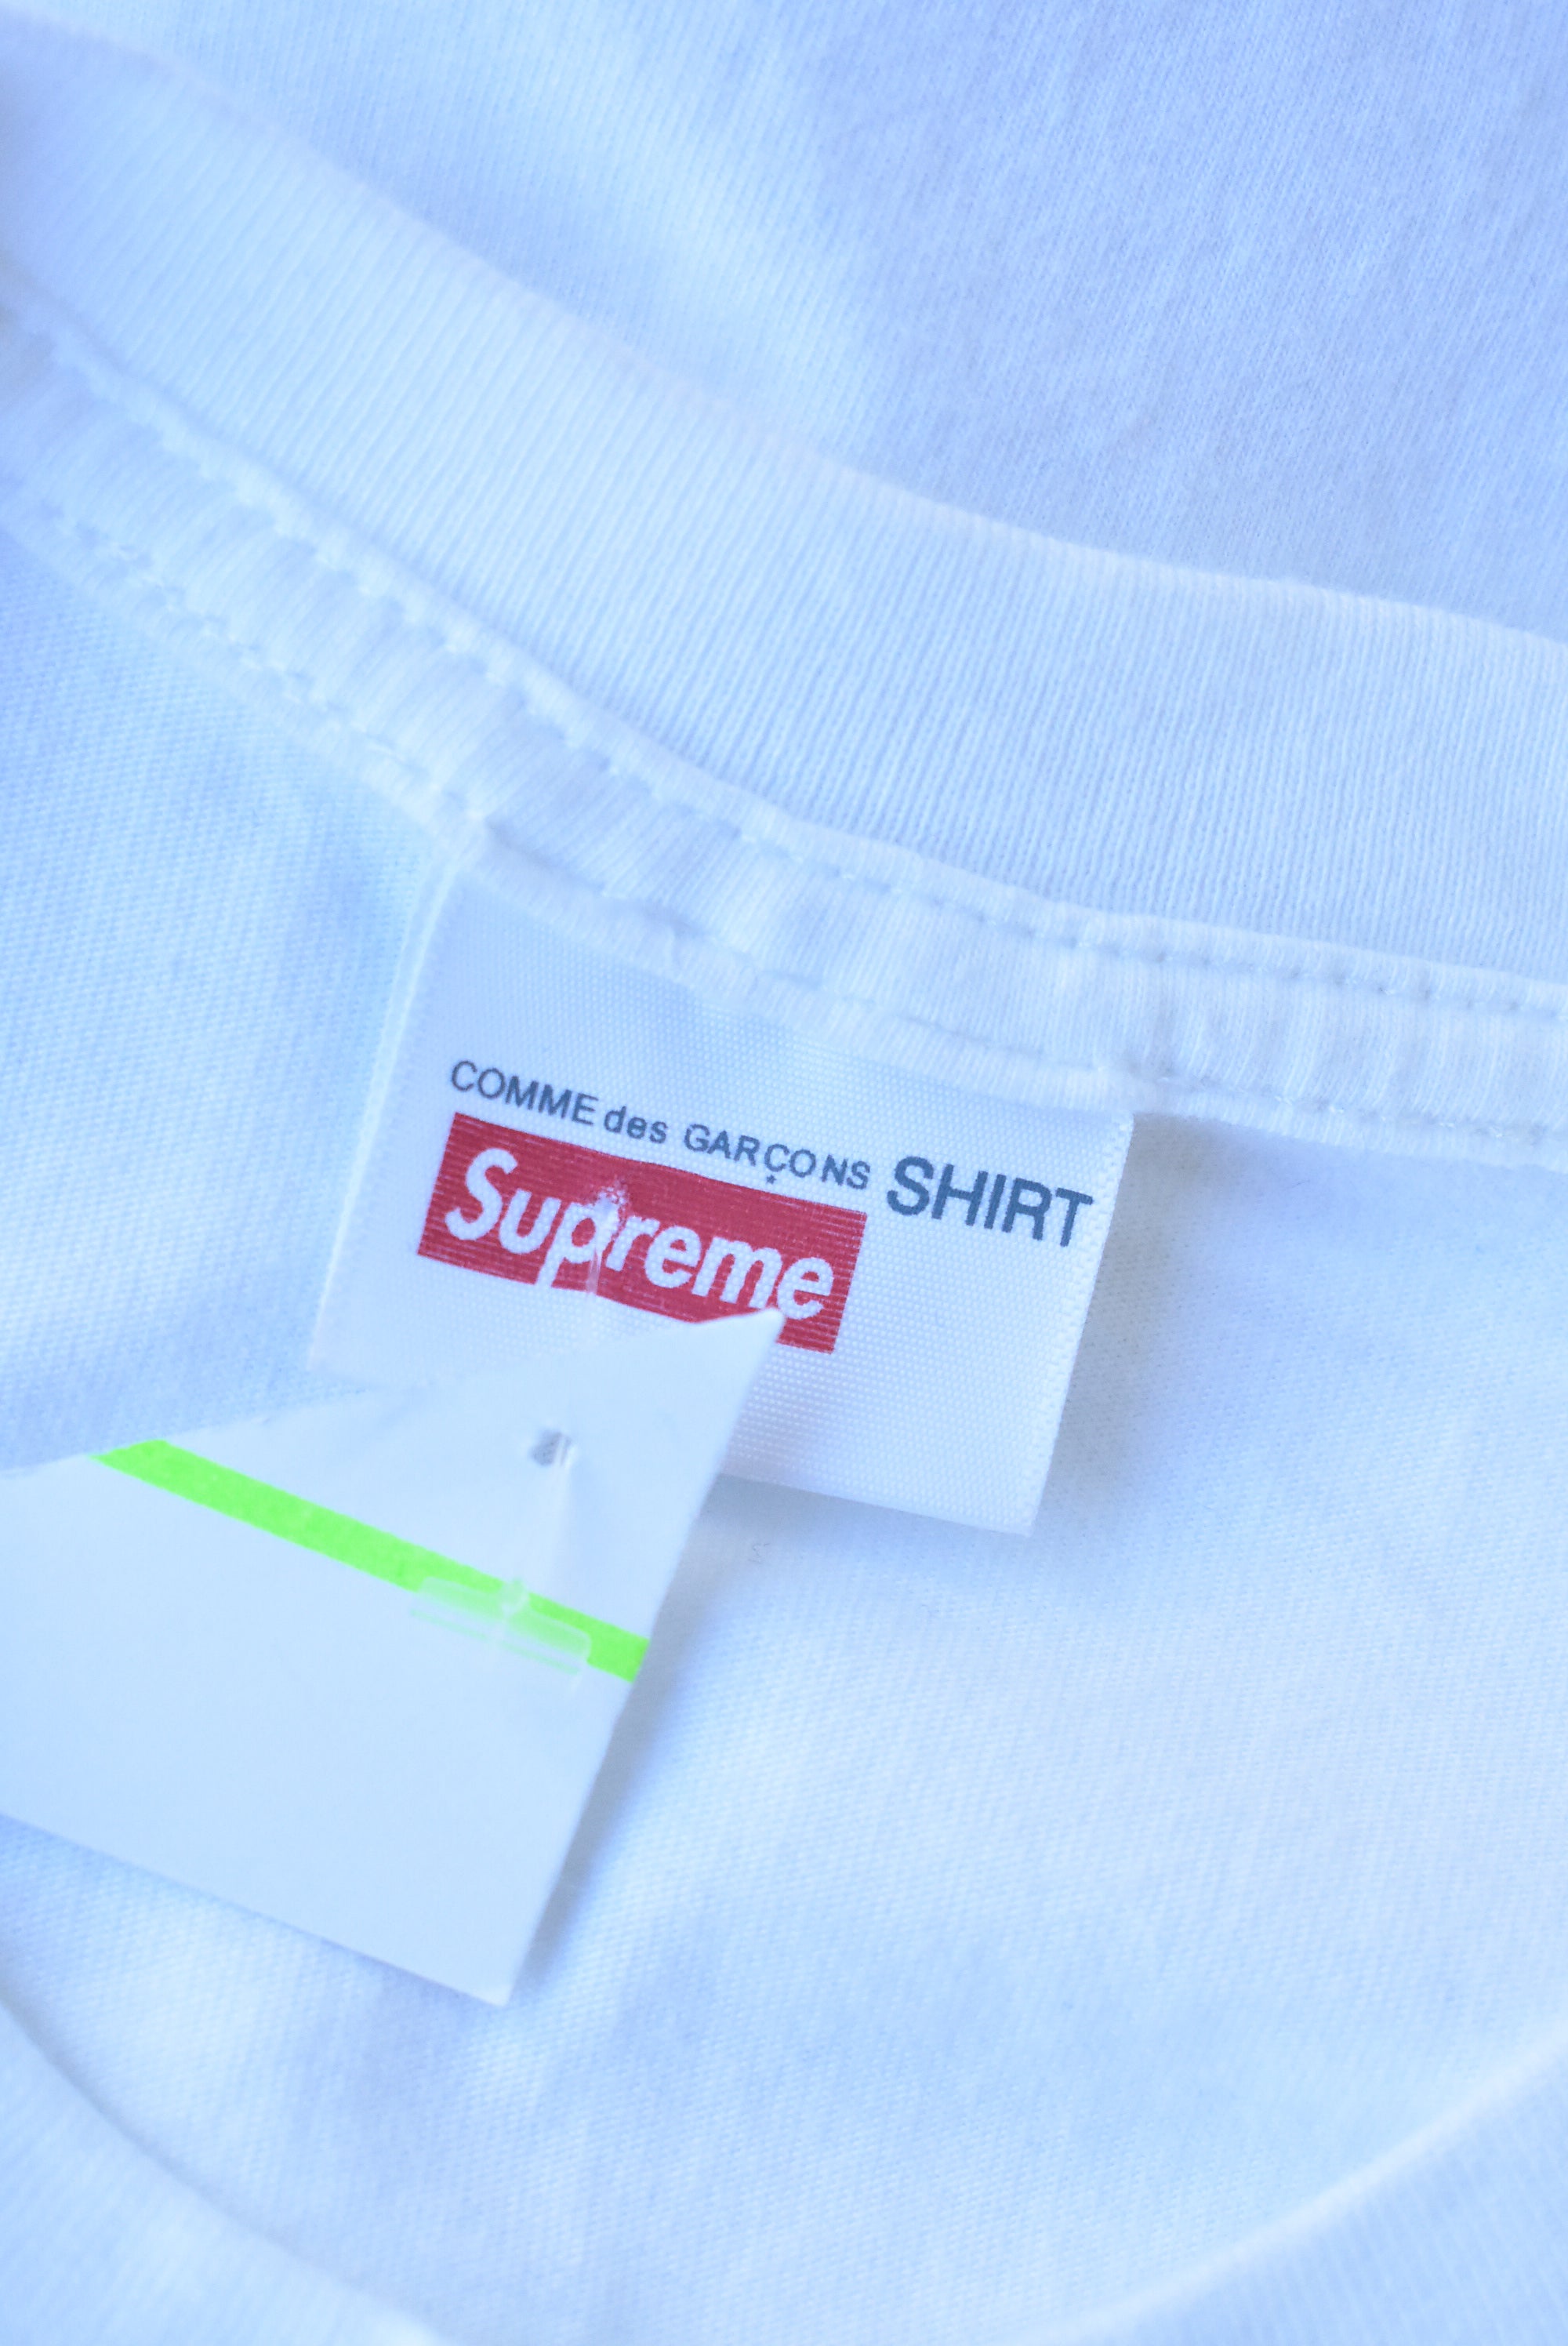 Supreme x Comme des garcons t-shirt, S – Shop on Carroll Online